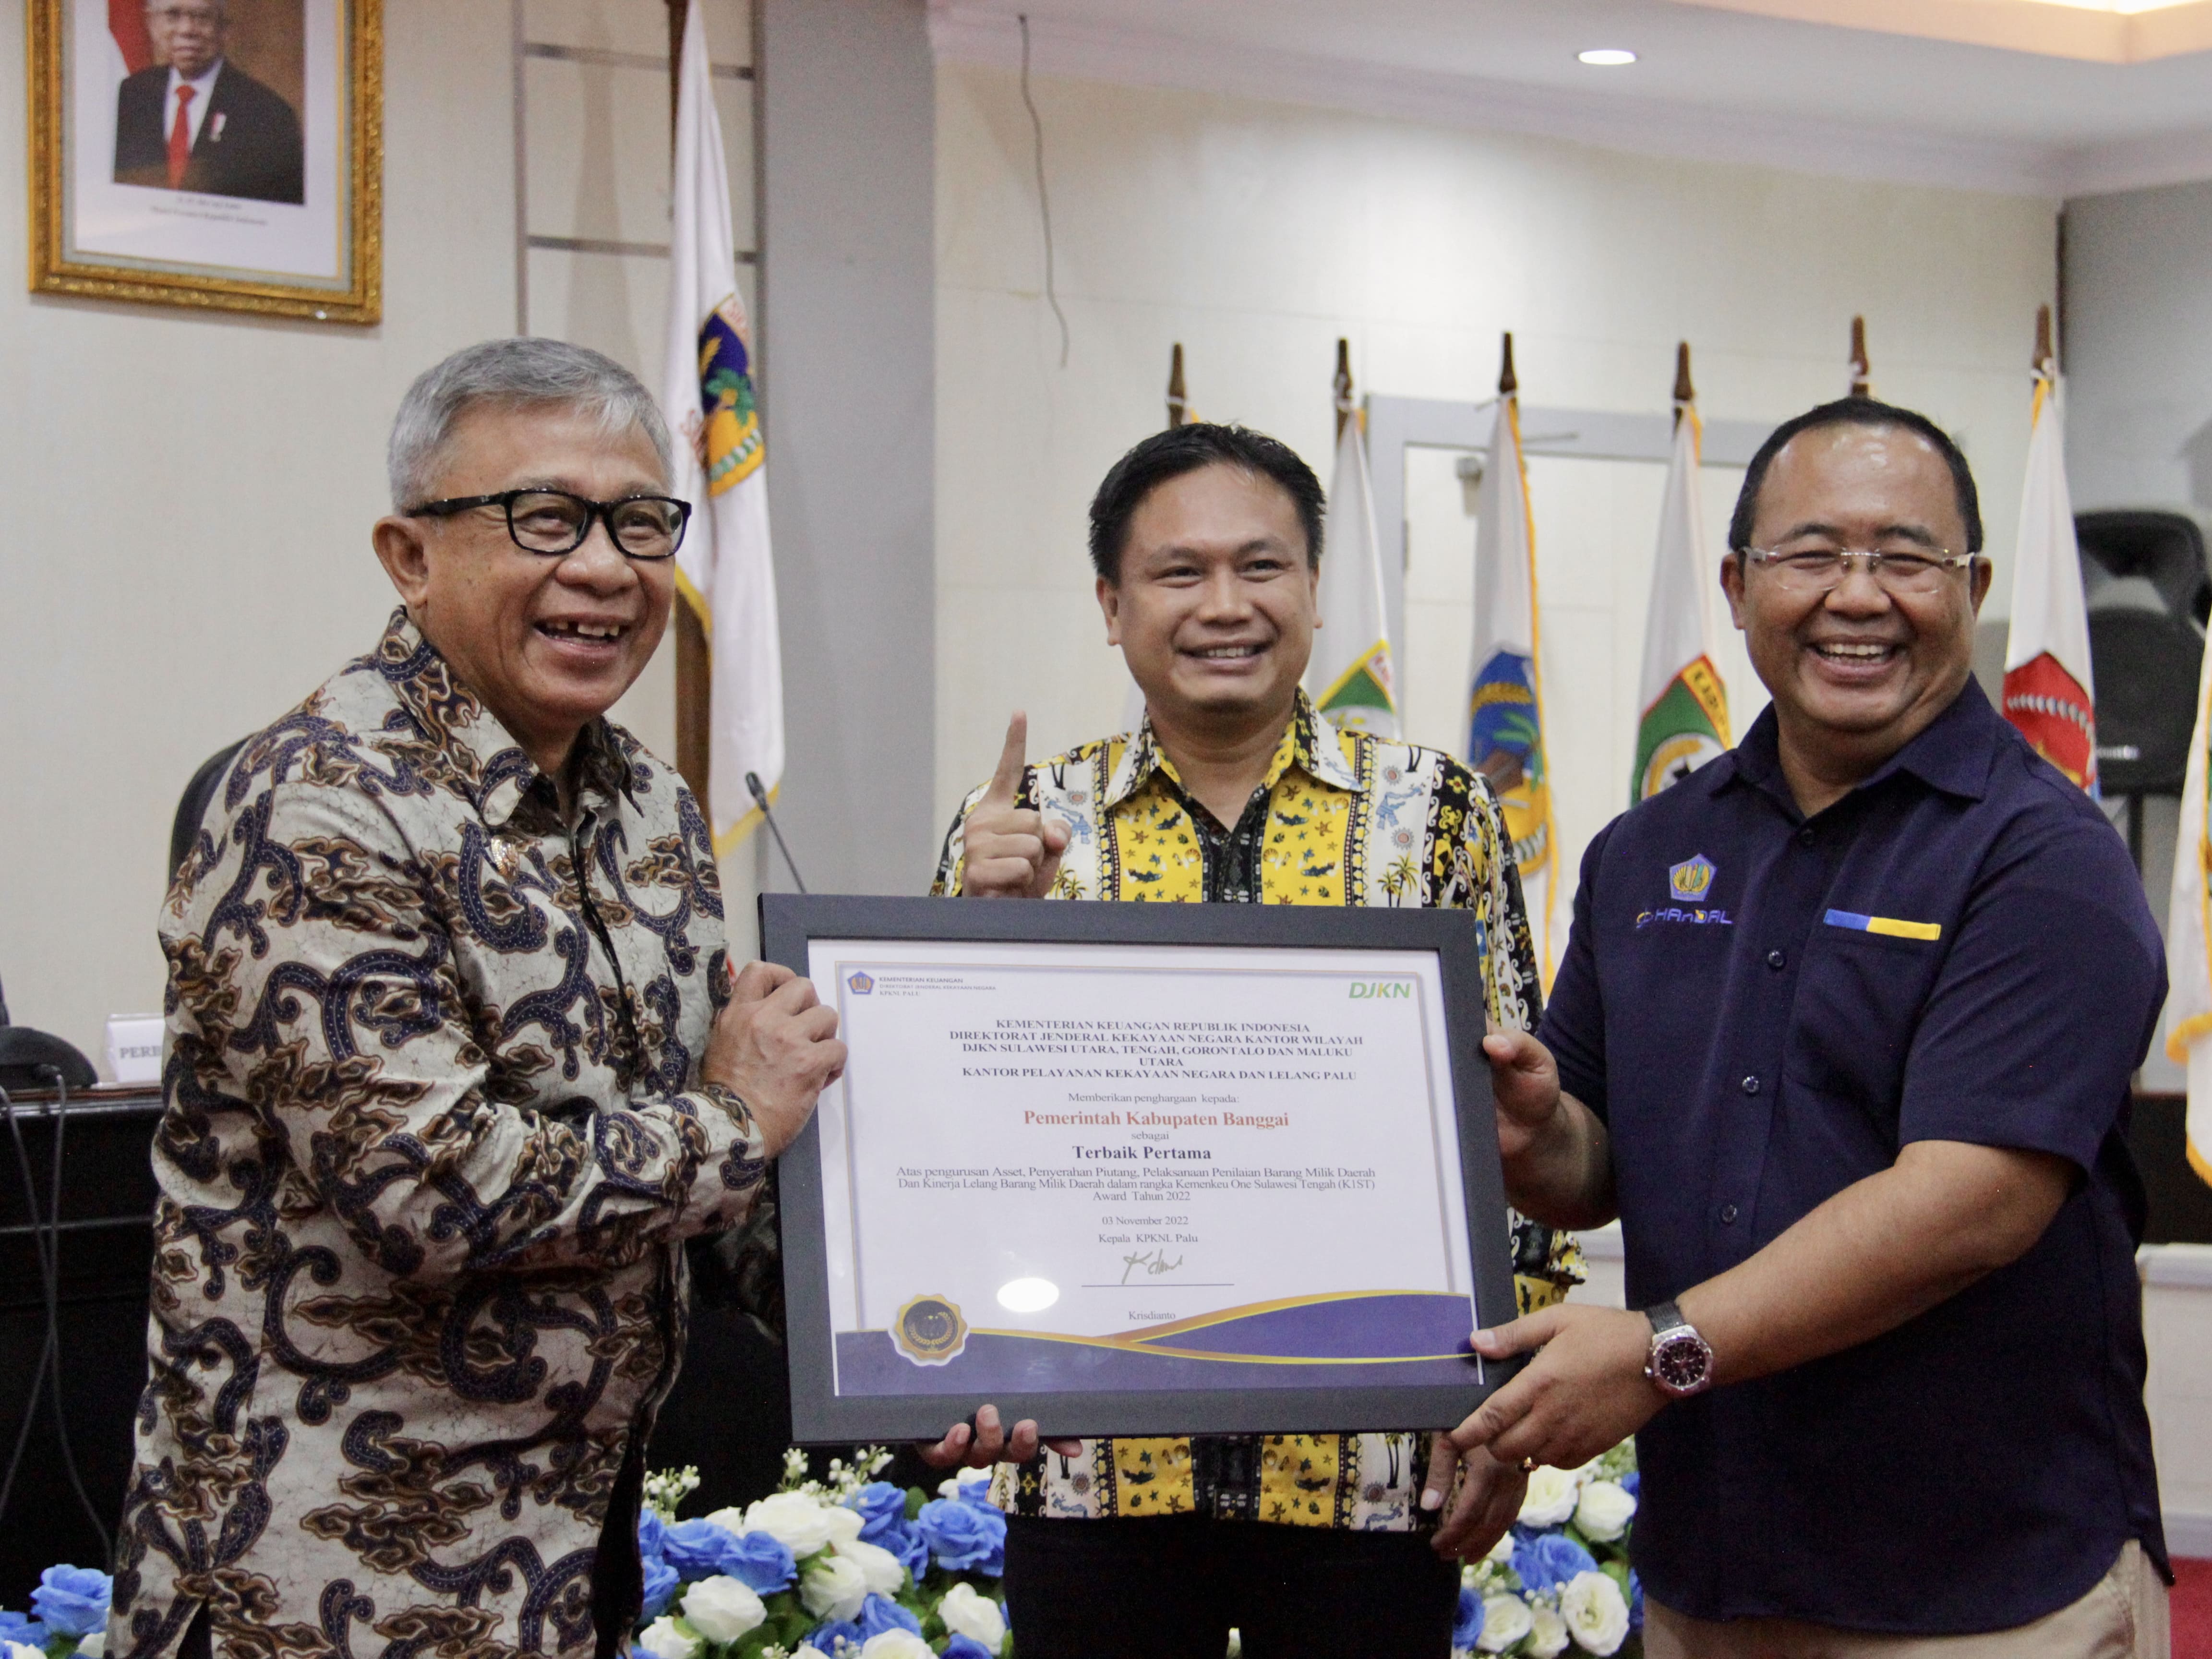 Kemenkeu Satu - Sulawesi Tengah (K1S) Awards, Bukti Kekuatan Sinergi Pemerintah Pusat dan Daerah